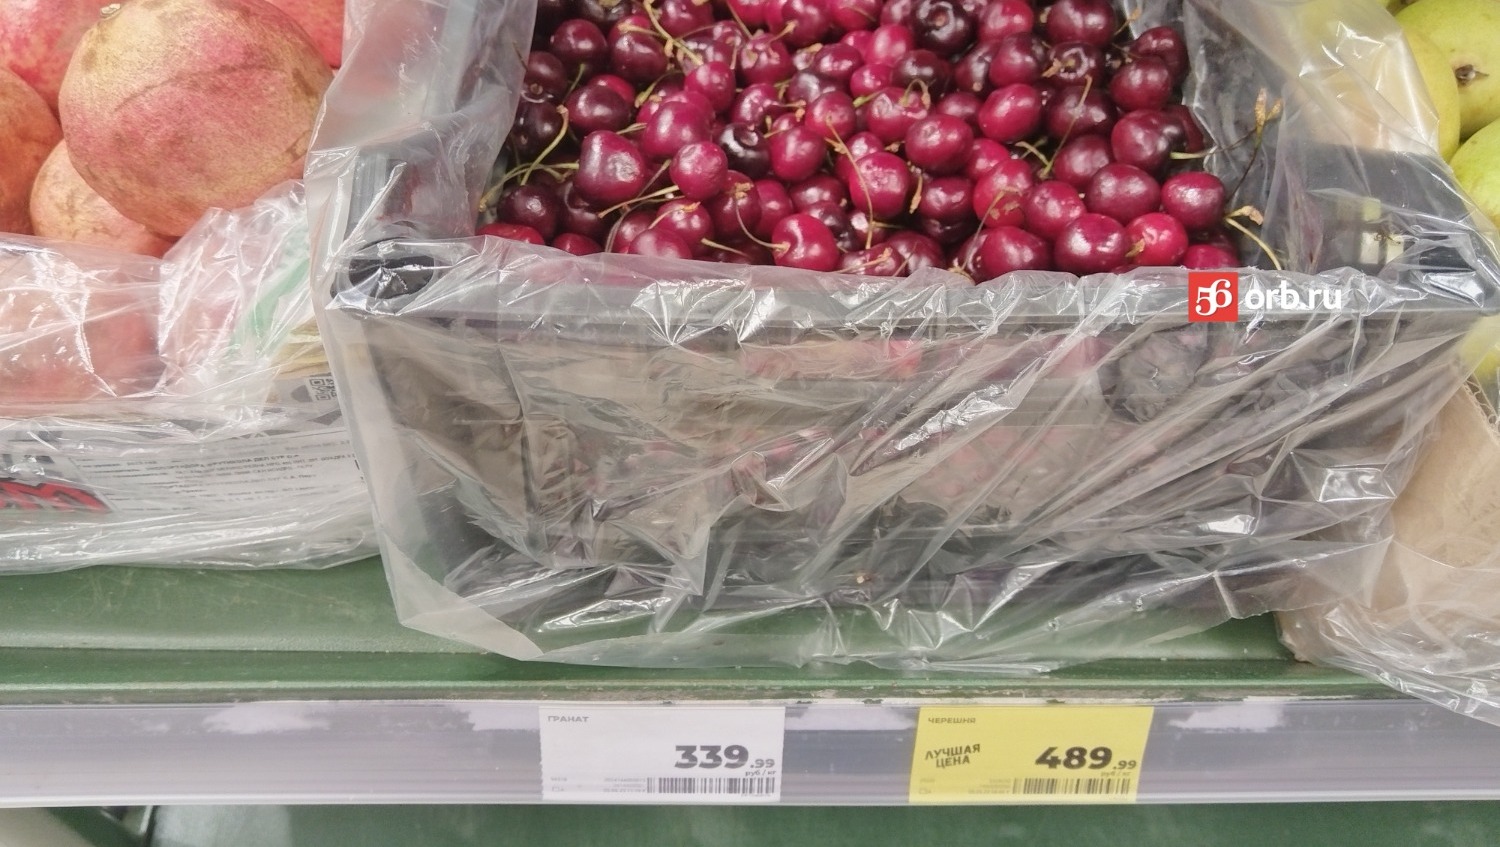 Черешня в магазинах стоит около  500 рублей за кило